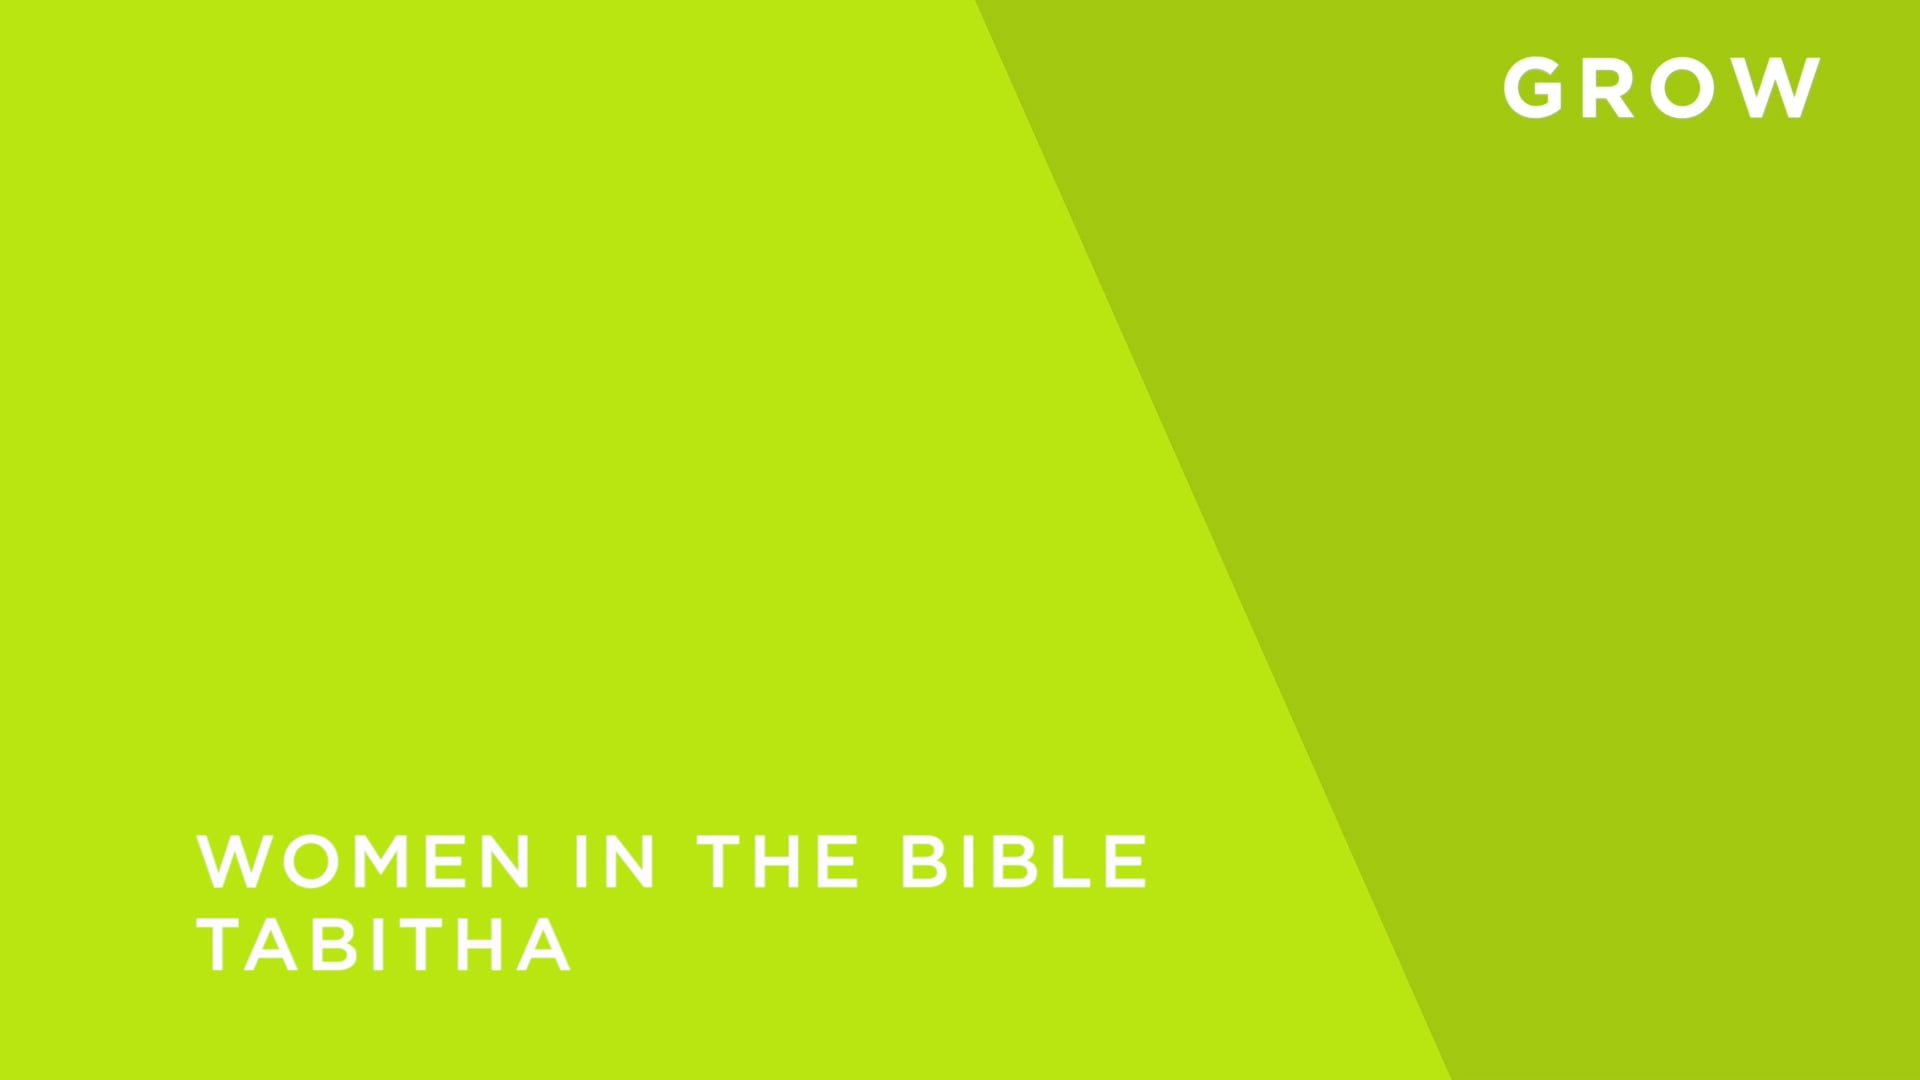 Bible Women [2] - Tabitha